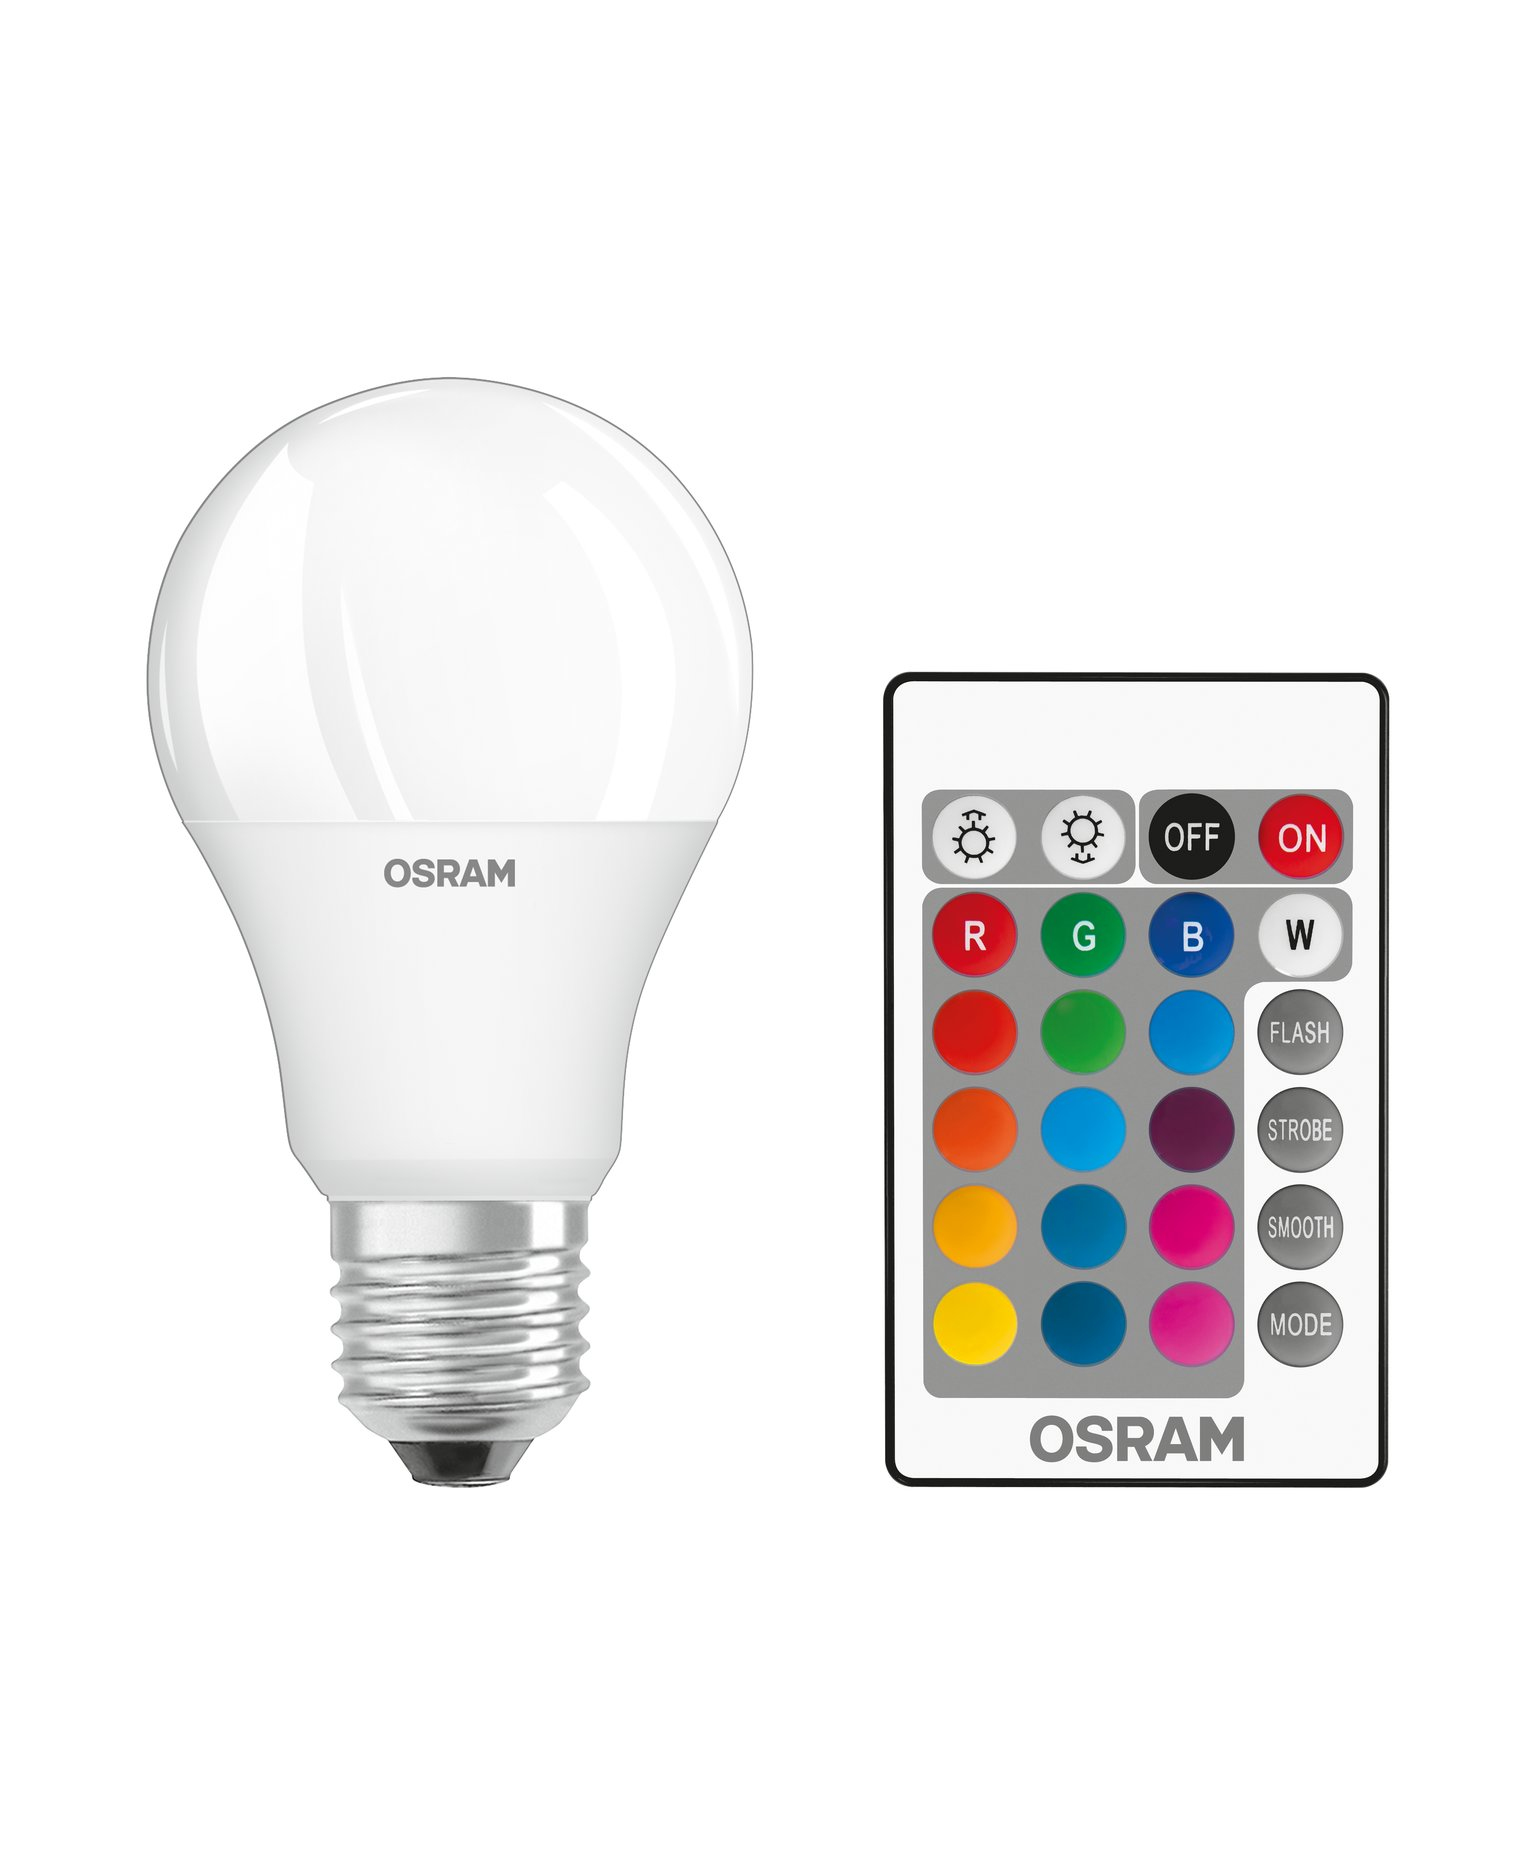 Osram 4058075430754 LED monocolore Classe energetica A+ A++ - E E27 Forma tradizionale